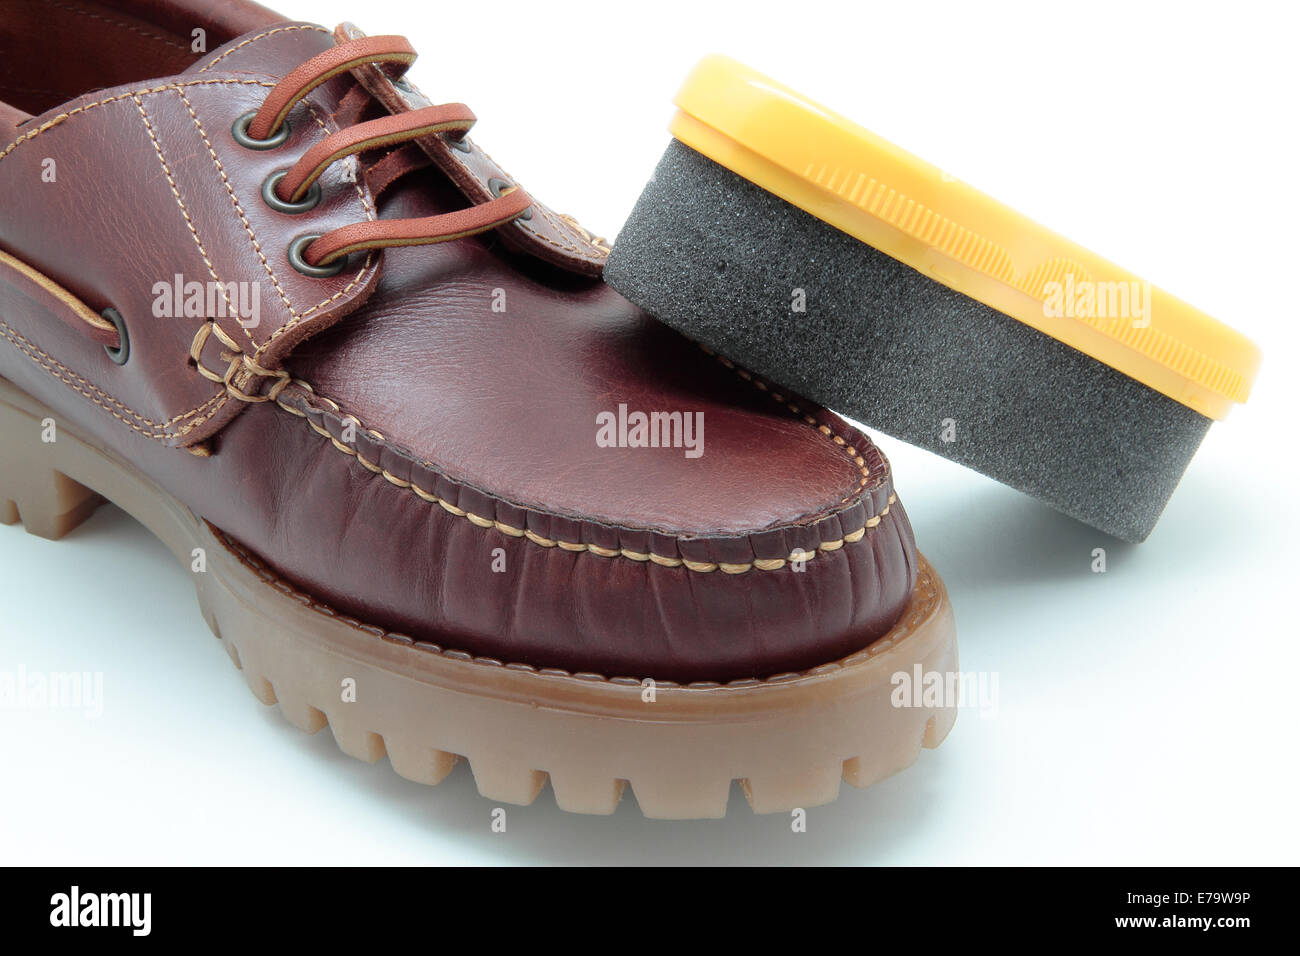 shoe and shoe brush on white background Stock Photo